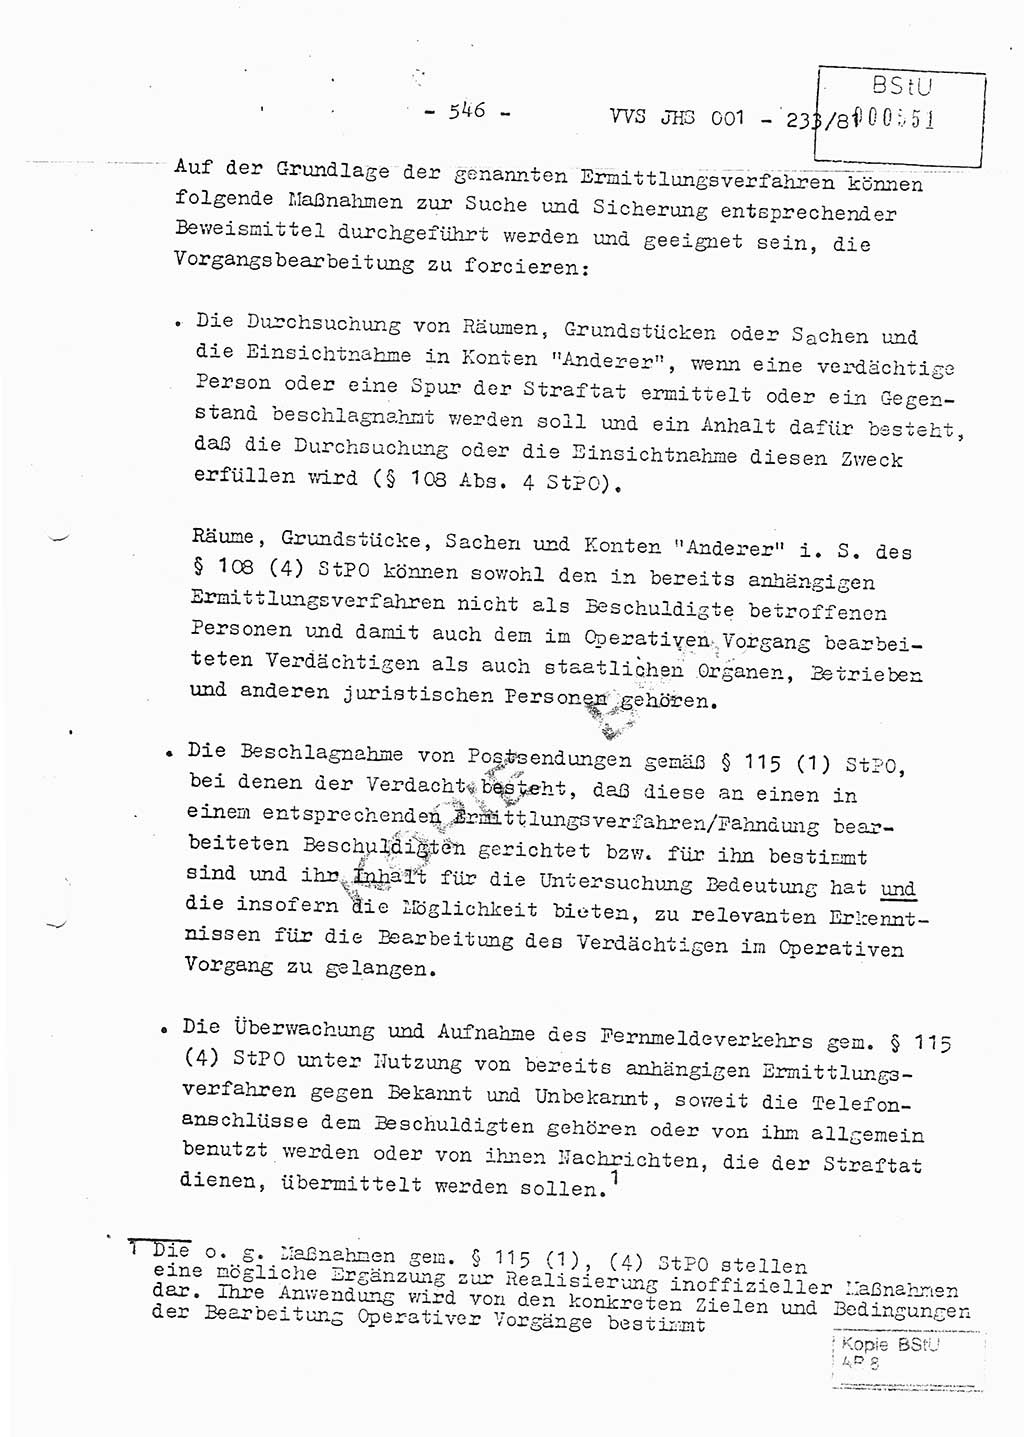 Dissertation Oberstleutnant Horst Zank (JHS), Oberstleutnant Dr. Karl-Heinz Knoblauch (JHS), Oberstleutnant Gustav-Adolf Kowalewski (HA Ⅸ), Oberstleutnant Wolfgang Plötner (HA Ⅸ), Ministerium für Staatssicherheit (MfS) [Deutsche Demokratische Republik (DDR)], Juristische Hochschule (JHS), Vertrauliche Verschlußsache (VVS) o001-233/81, Potsdam 1981, Blatt 546 (Diss. MfS DDR JHS VVS o001-233/81 1981, Bl. 546)